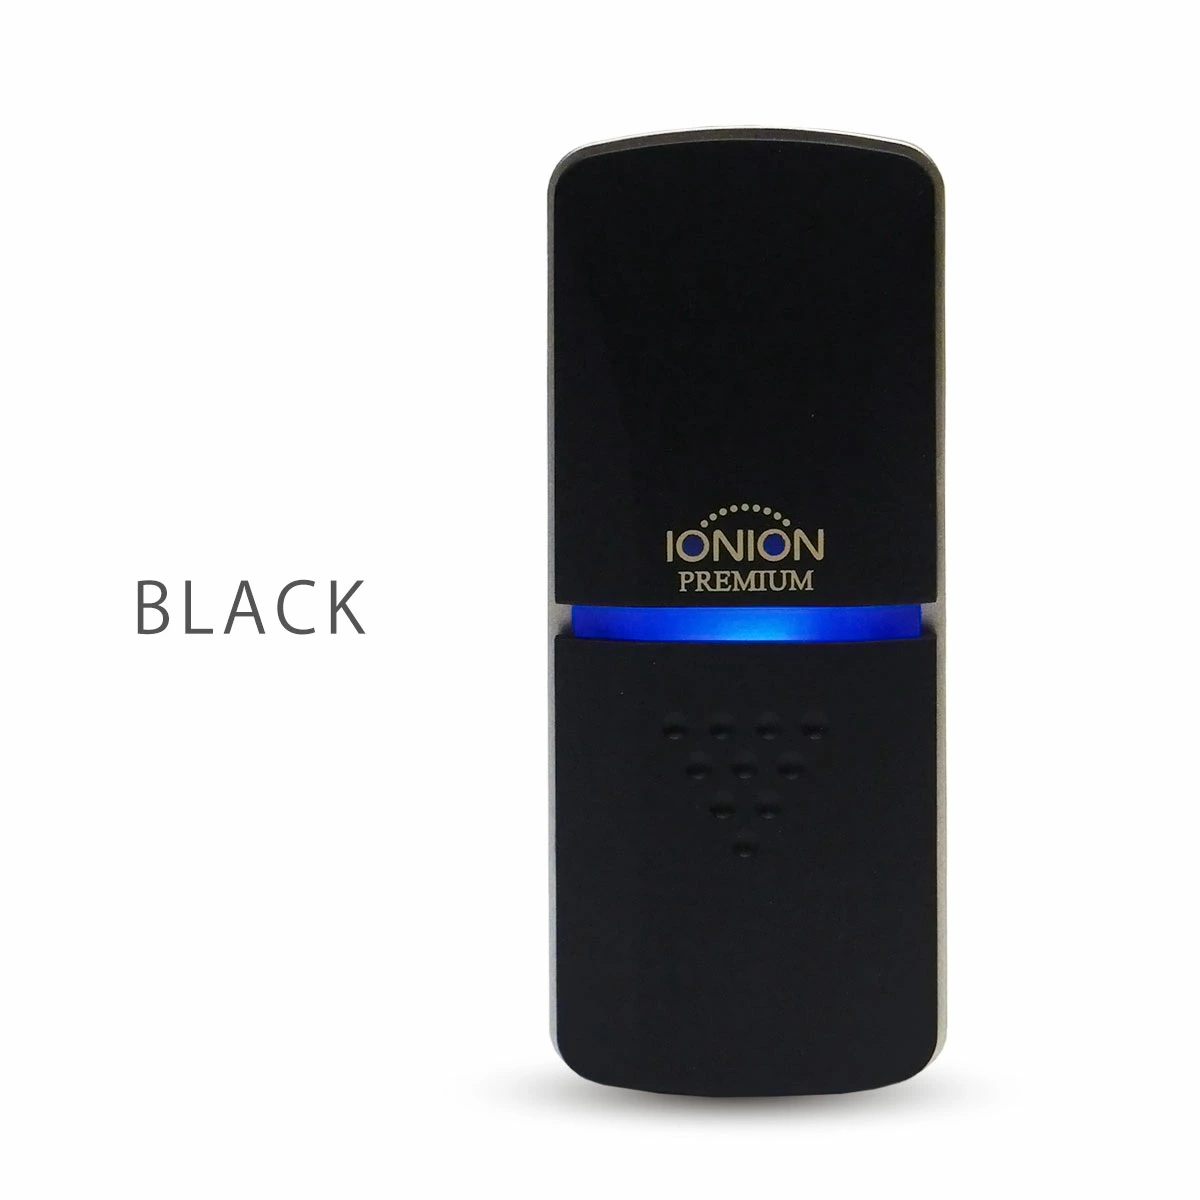 IONION PREMIUM イオニオン プレミアム 2色 ブラック ホワイト 超小型 マイナスイオン発生器 オゾンフリー マイナスイオン 75万個  PM2.5 花粉 最強対策 多機能 車 個人空間など ストラップ付き 日本製